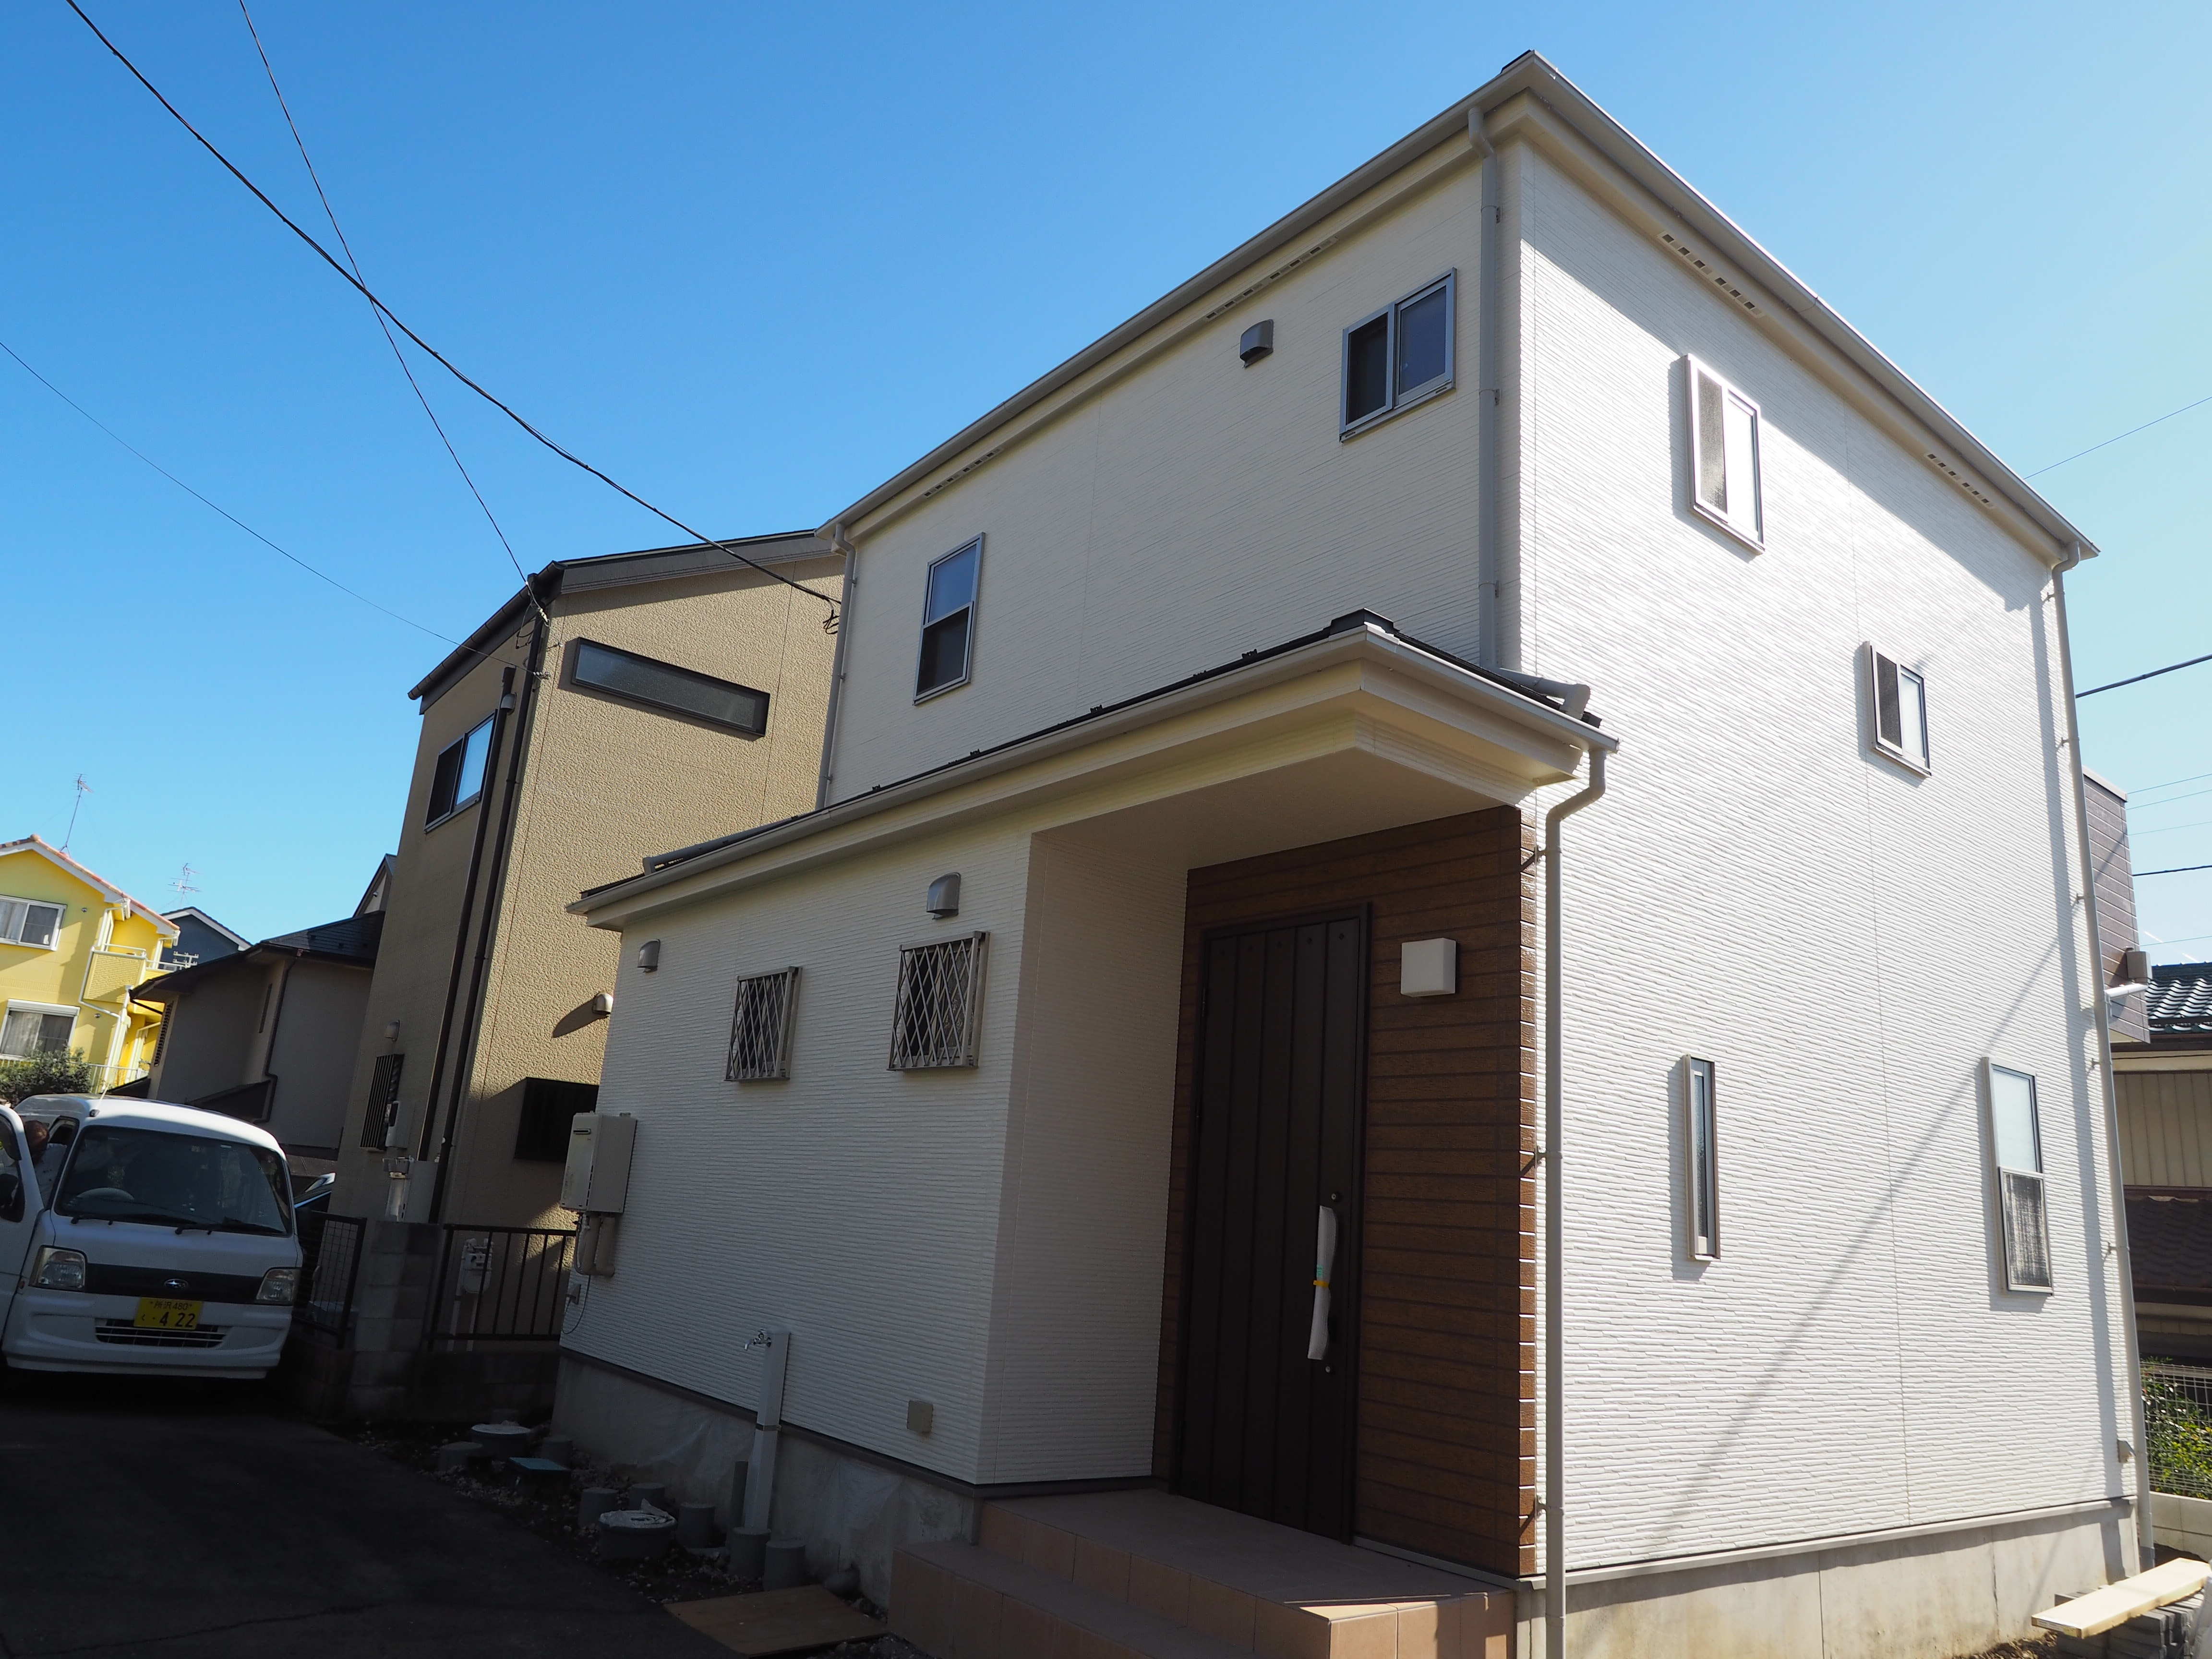 所沢市の住宅街にたたずむ新築一戸建ナチュラルなホワイトカラーの外観画像